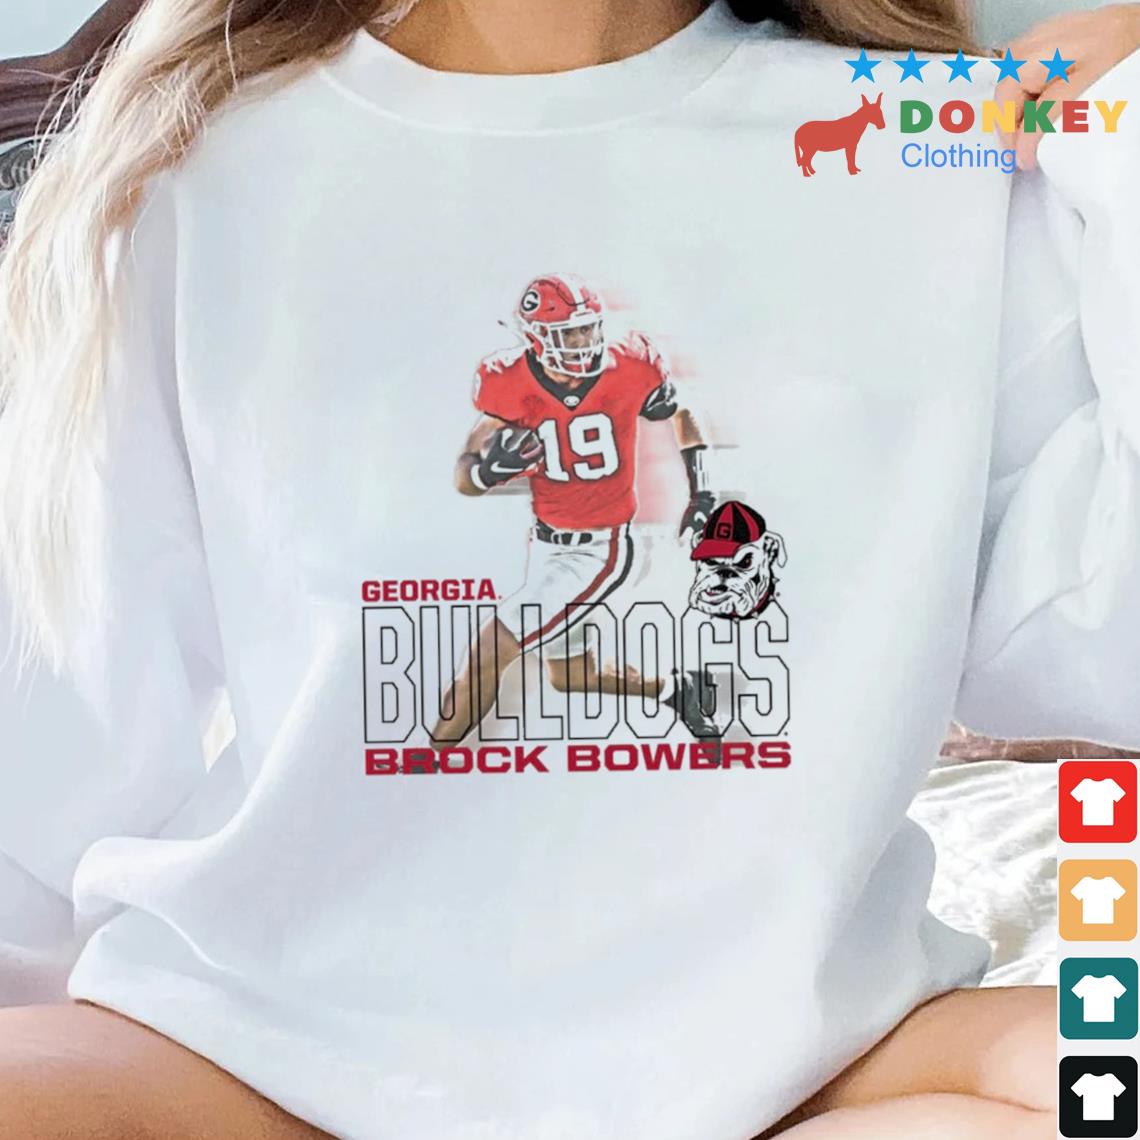 Georgia Bulldogs Brock Bowers Run Shirt